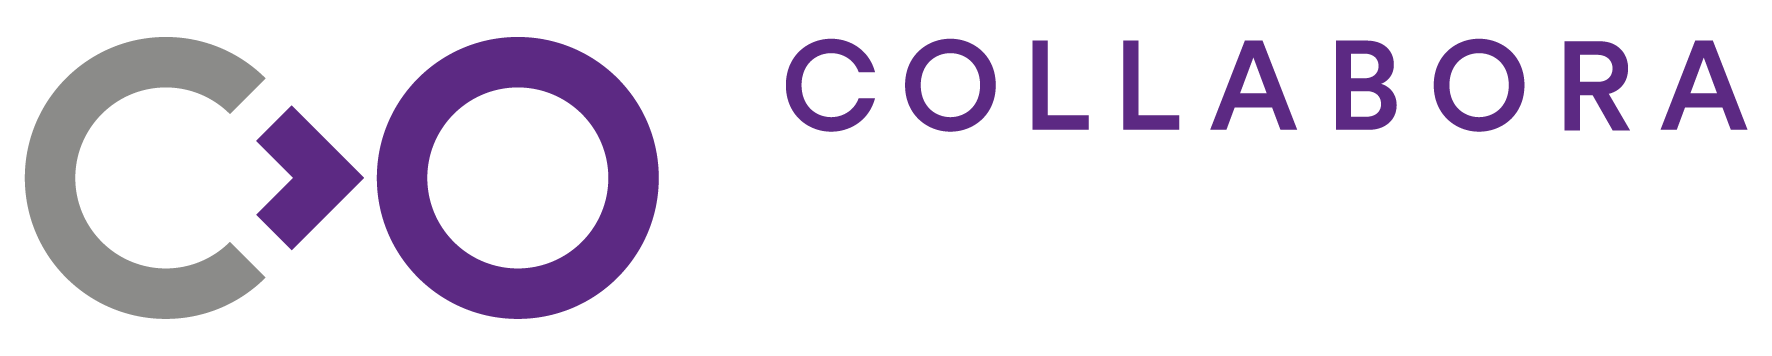 Collabora logo